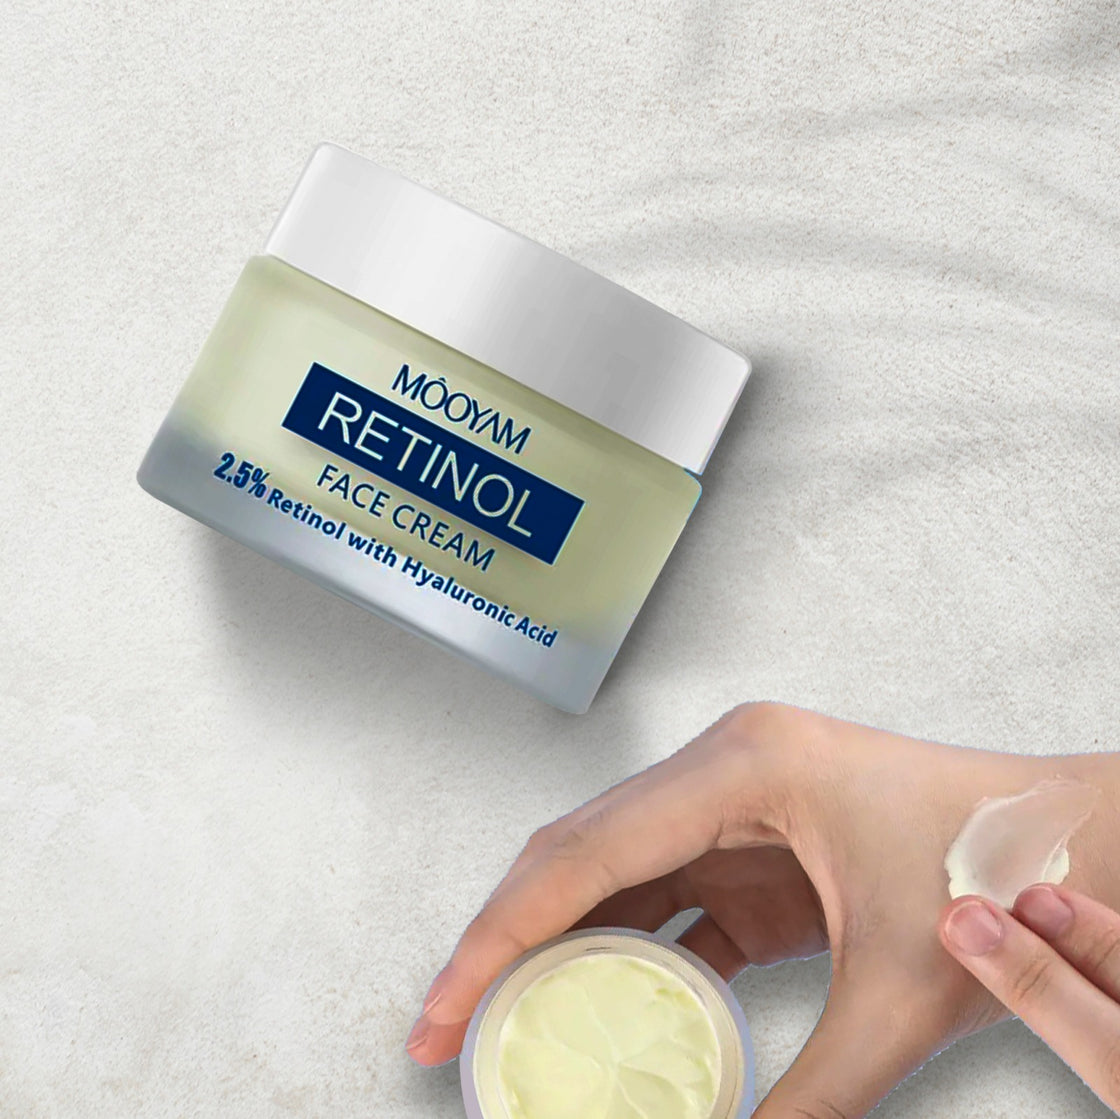 Retinol 2.5% Facial Cream Hyaluronic Acid Cream - 50Gm